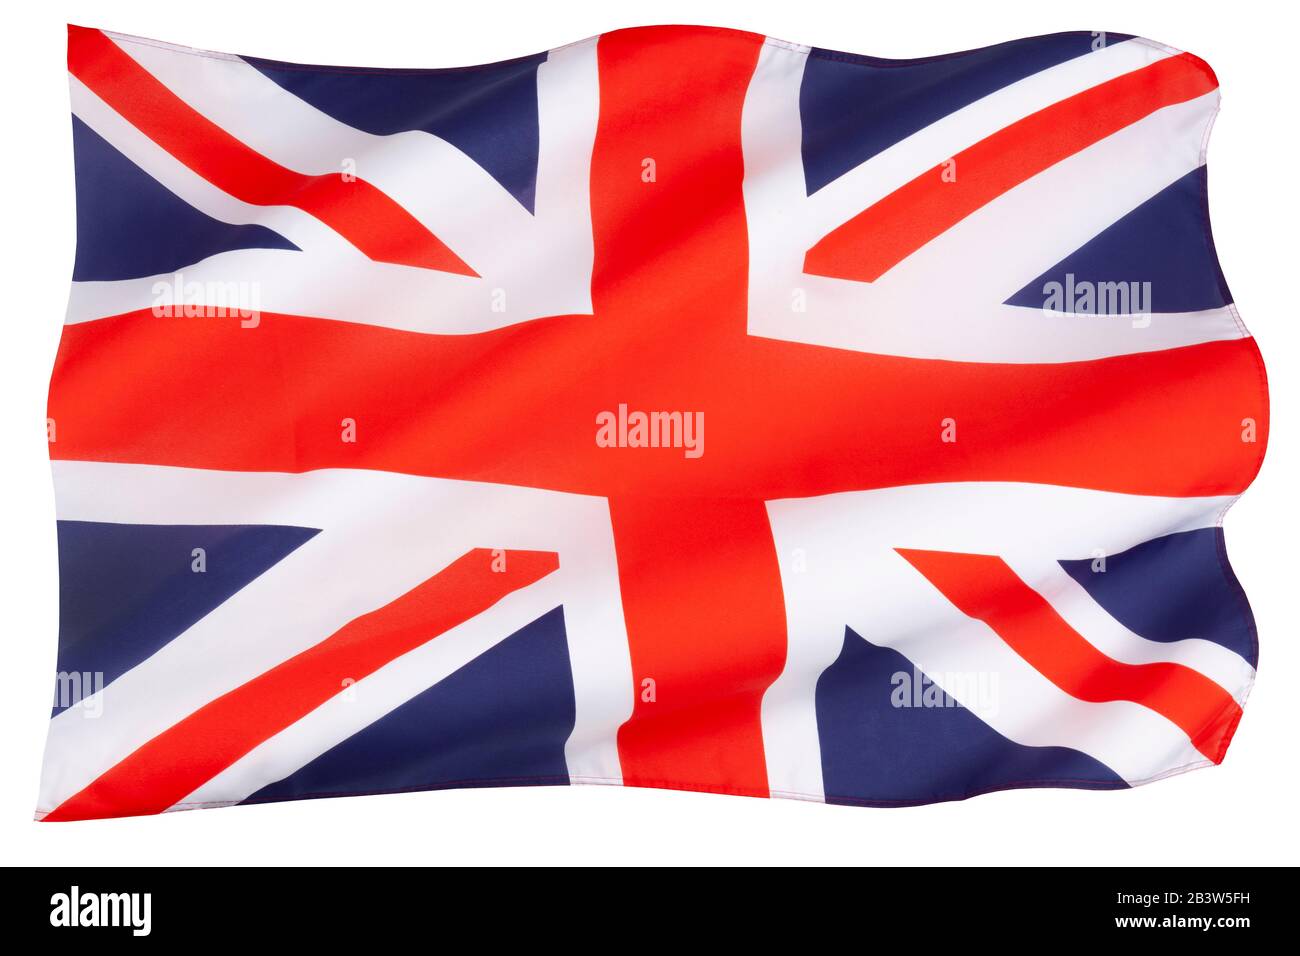 Le drapeau du Royaume-Uni de Grande-Bretagne et d'Irlande du Nord - l'Union Jack Banque D'Images